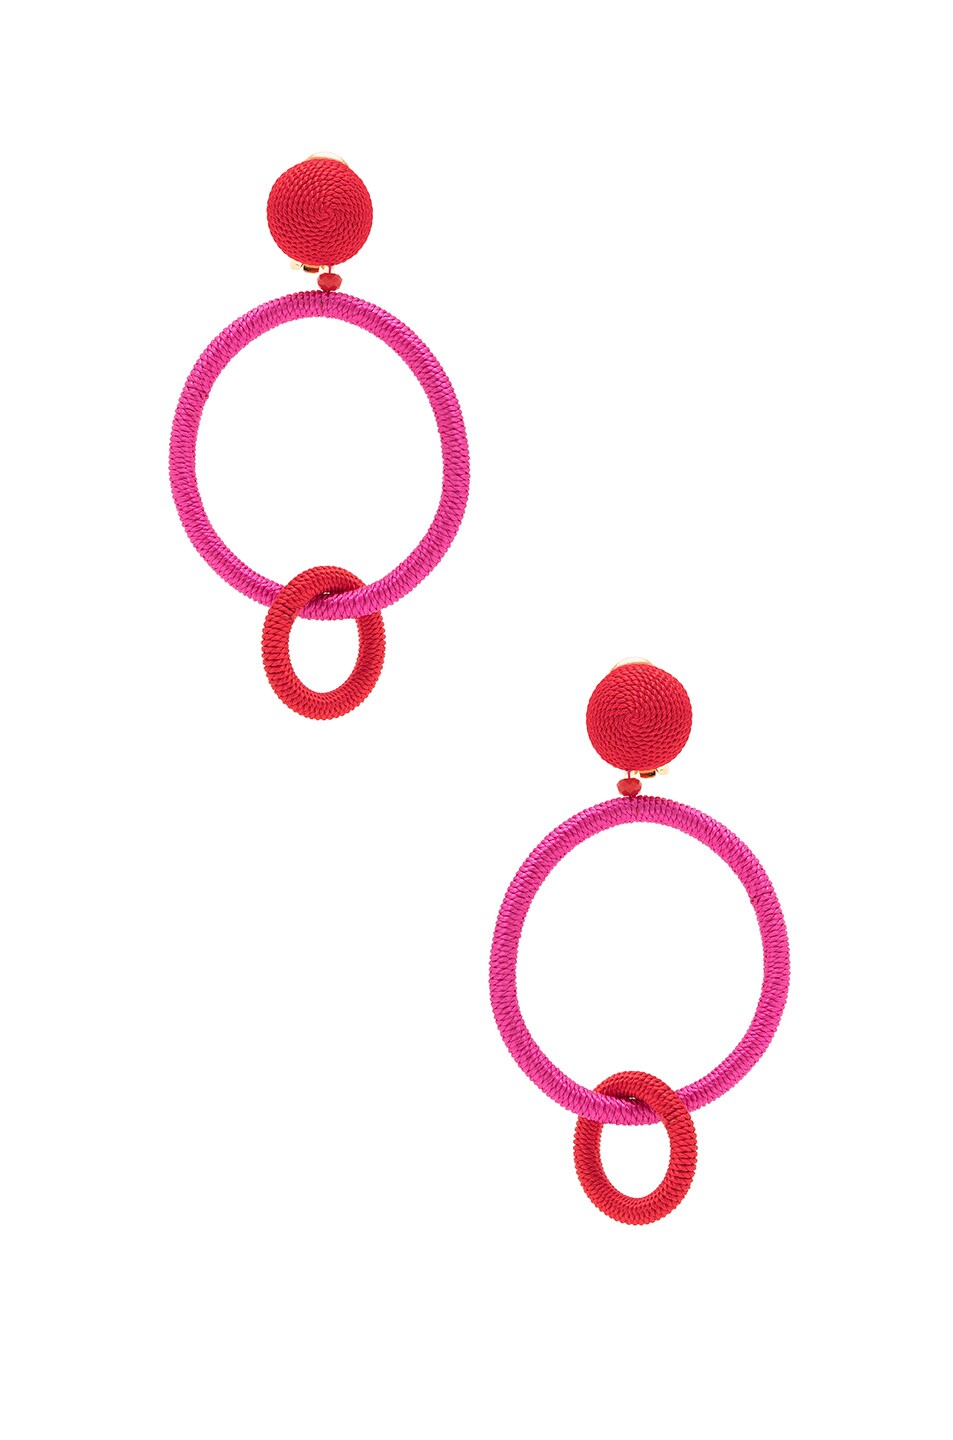 Image 1 of Oscar de la Renta for FWRD Silk Double Hoop Earrings in Spinel & Red